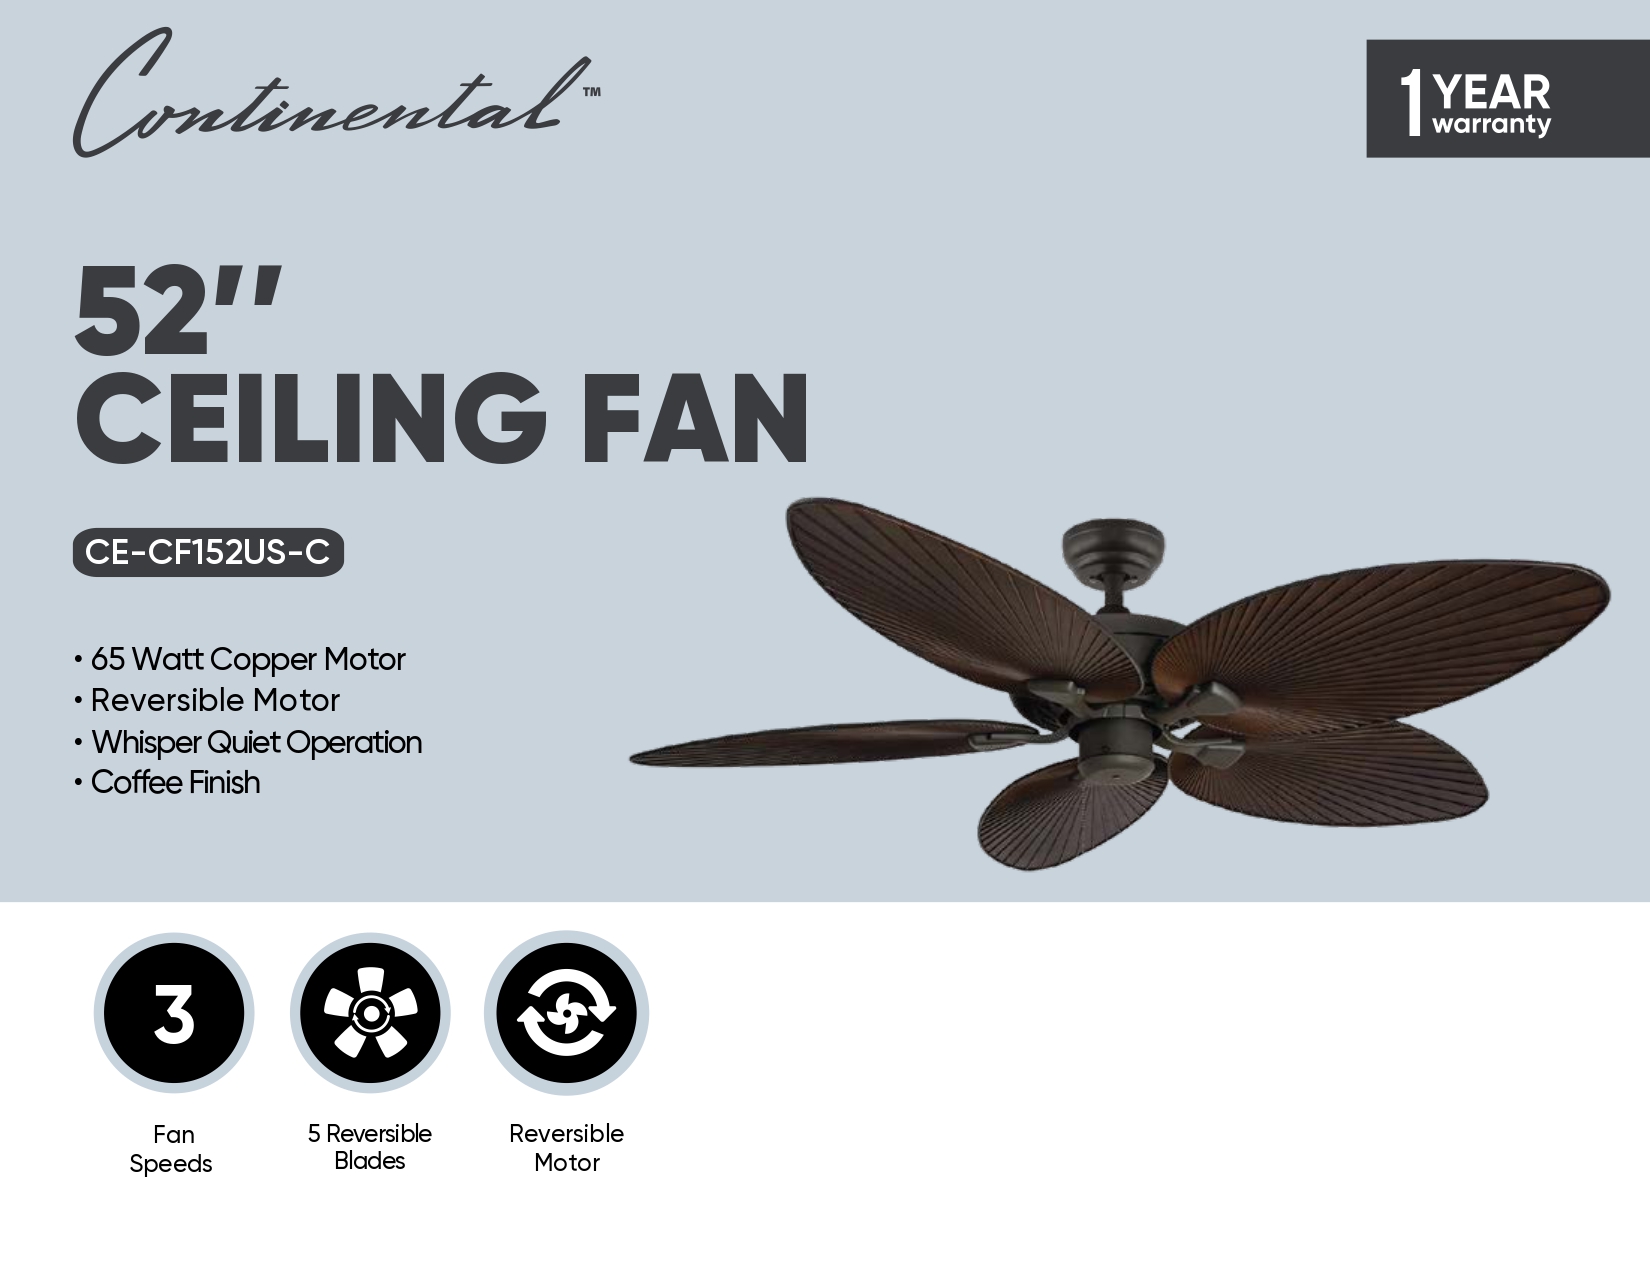 52" Ceiling Fan w/ Pull Chain